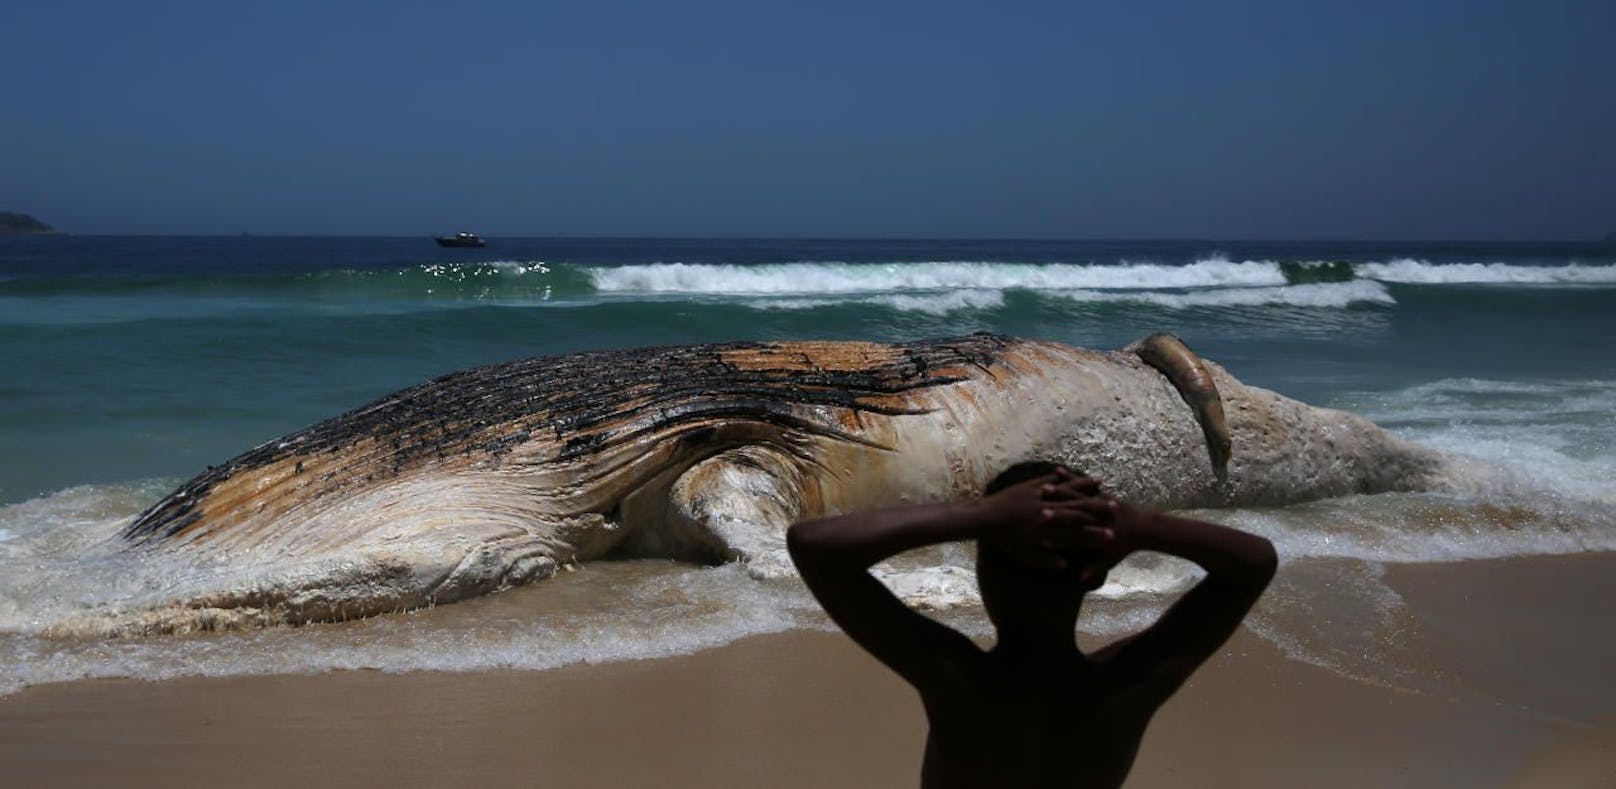 Toter Wal am Strand von Rio gestrandet